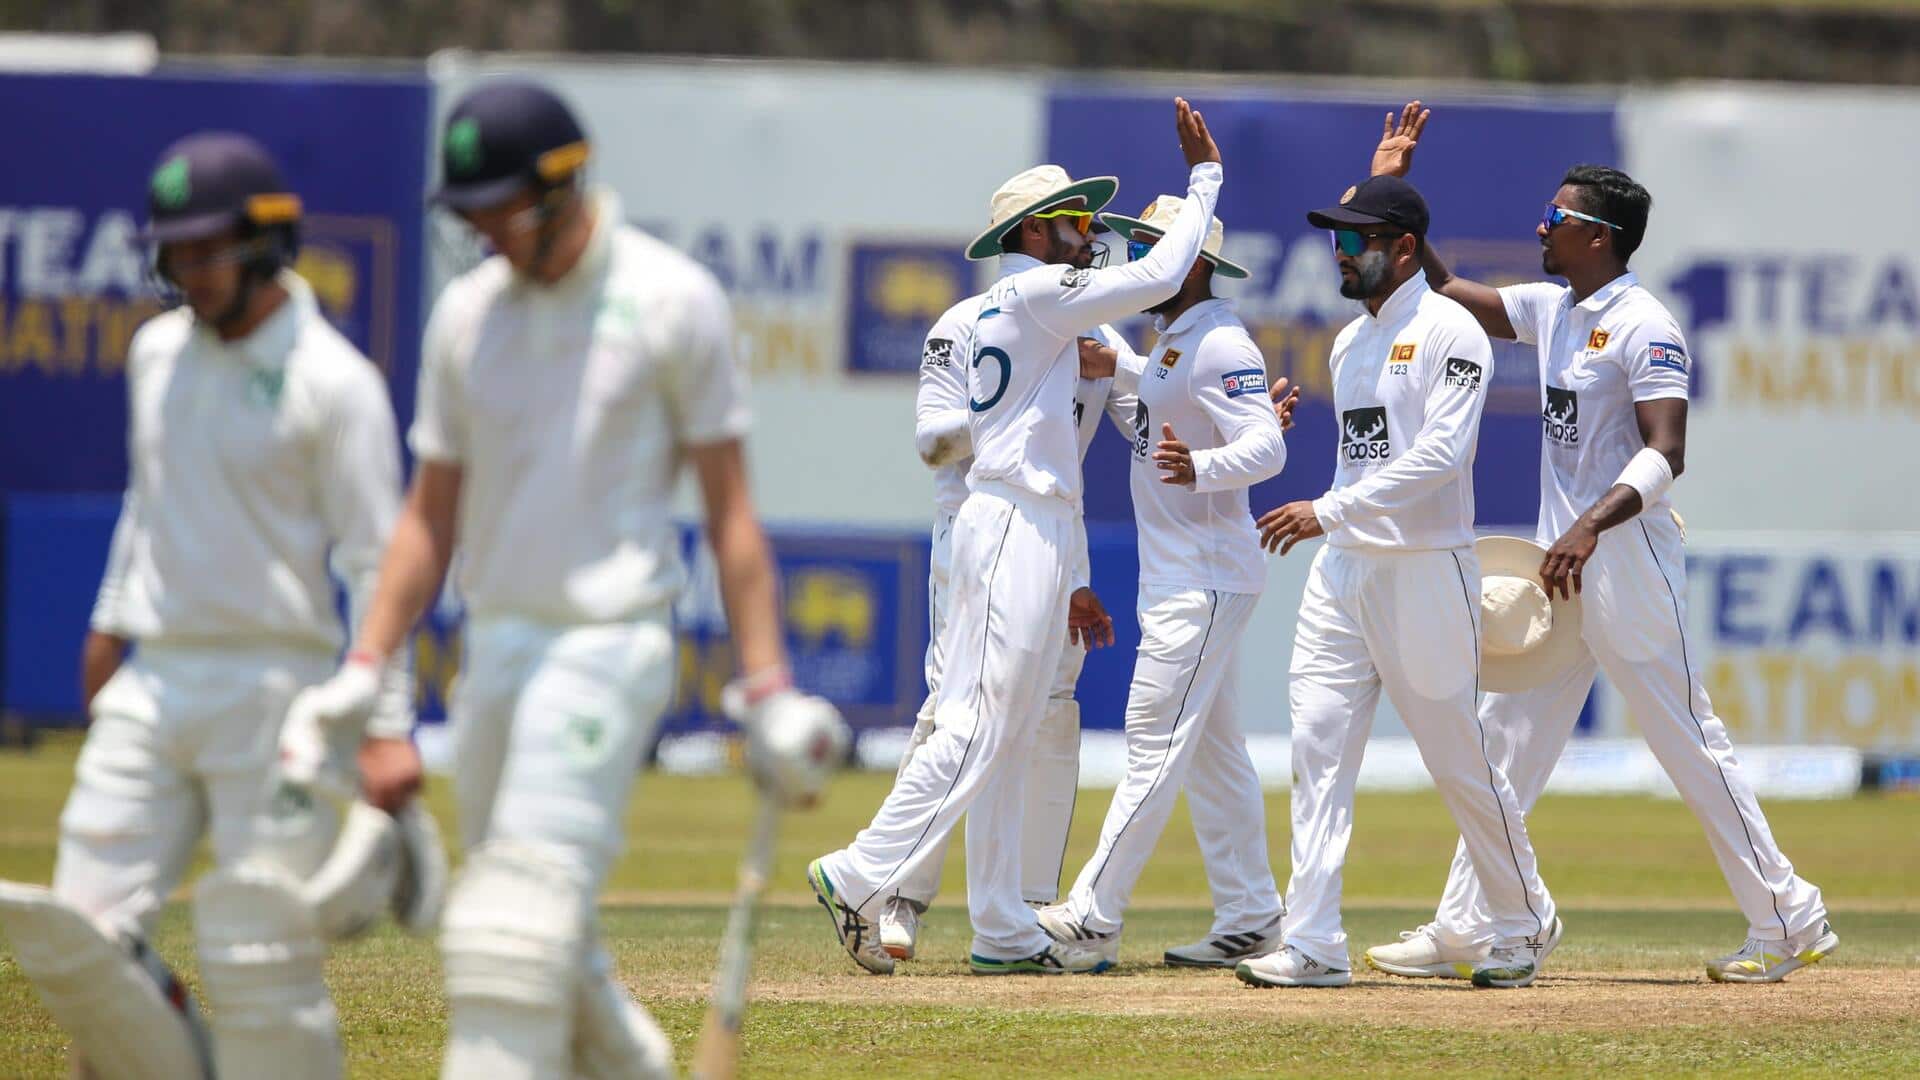 श्रीलंका ने पहले टेस्ट में आयरलैंड को हराकर रचा इतिहास, बने ये रिकॉर्ड्स 